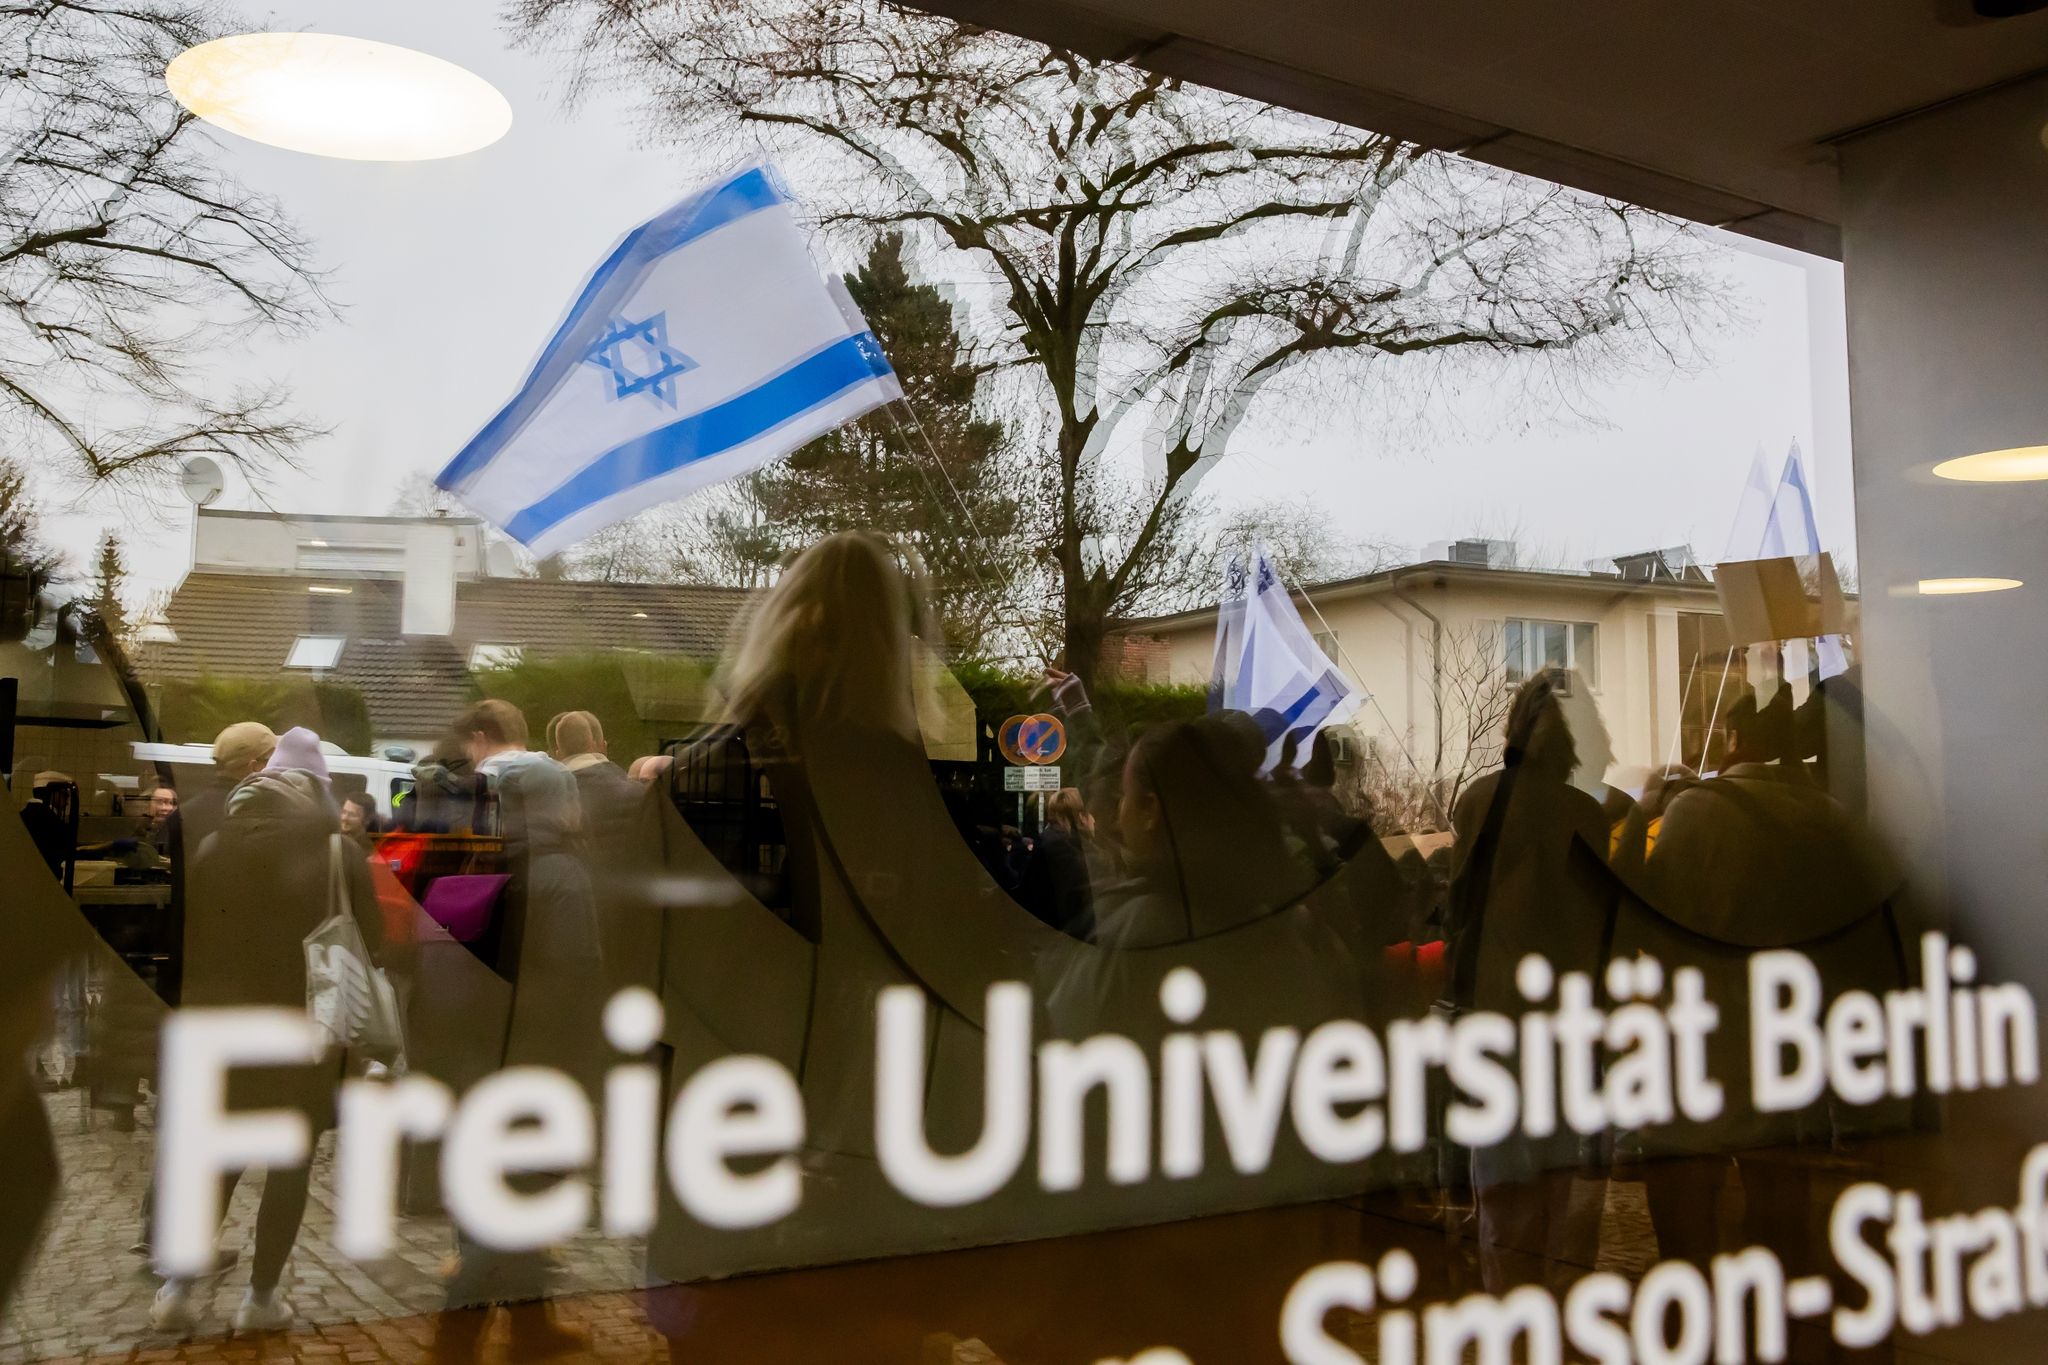 Nach dem Angriff auf einen jüdischen Studenten hat die Freie Universität Berlin Konsequenzen gezogen. Die Universität erlasse gegen den Tatverdächtigen ein Hausverbot zum Schutz der Hochschul-Mitglieder auf dem Campus, teilte die Uni mit.